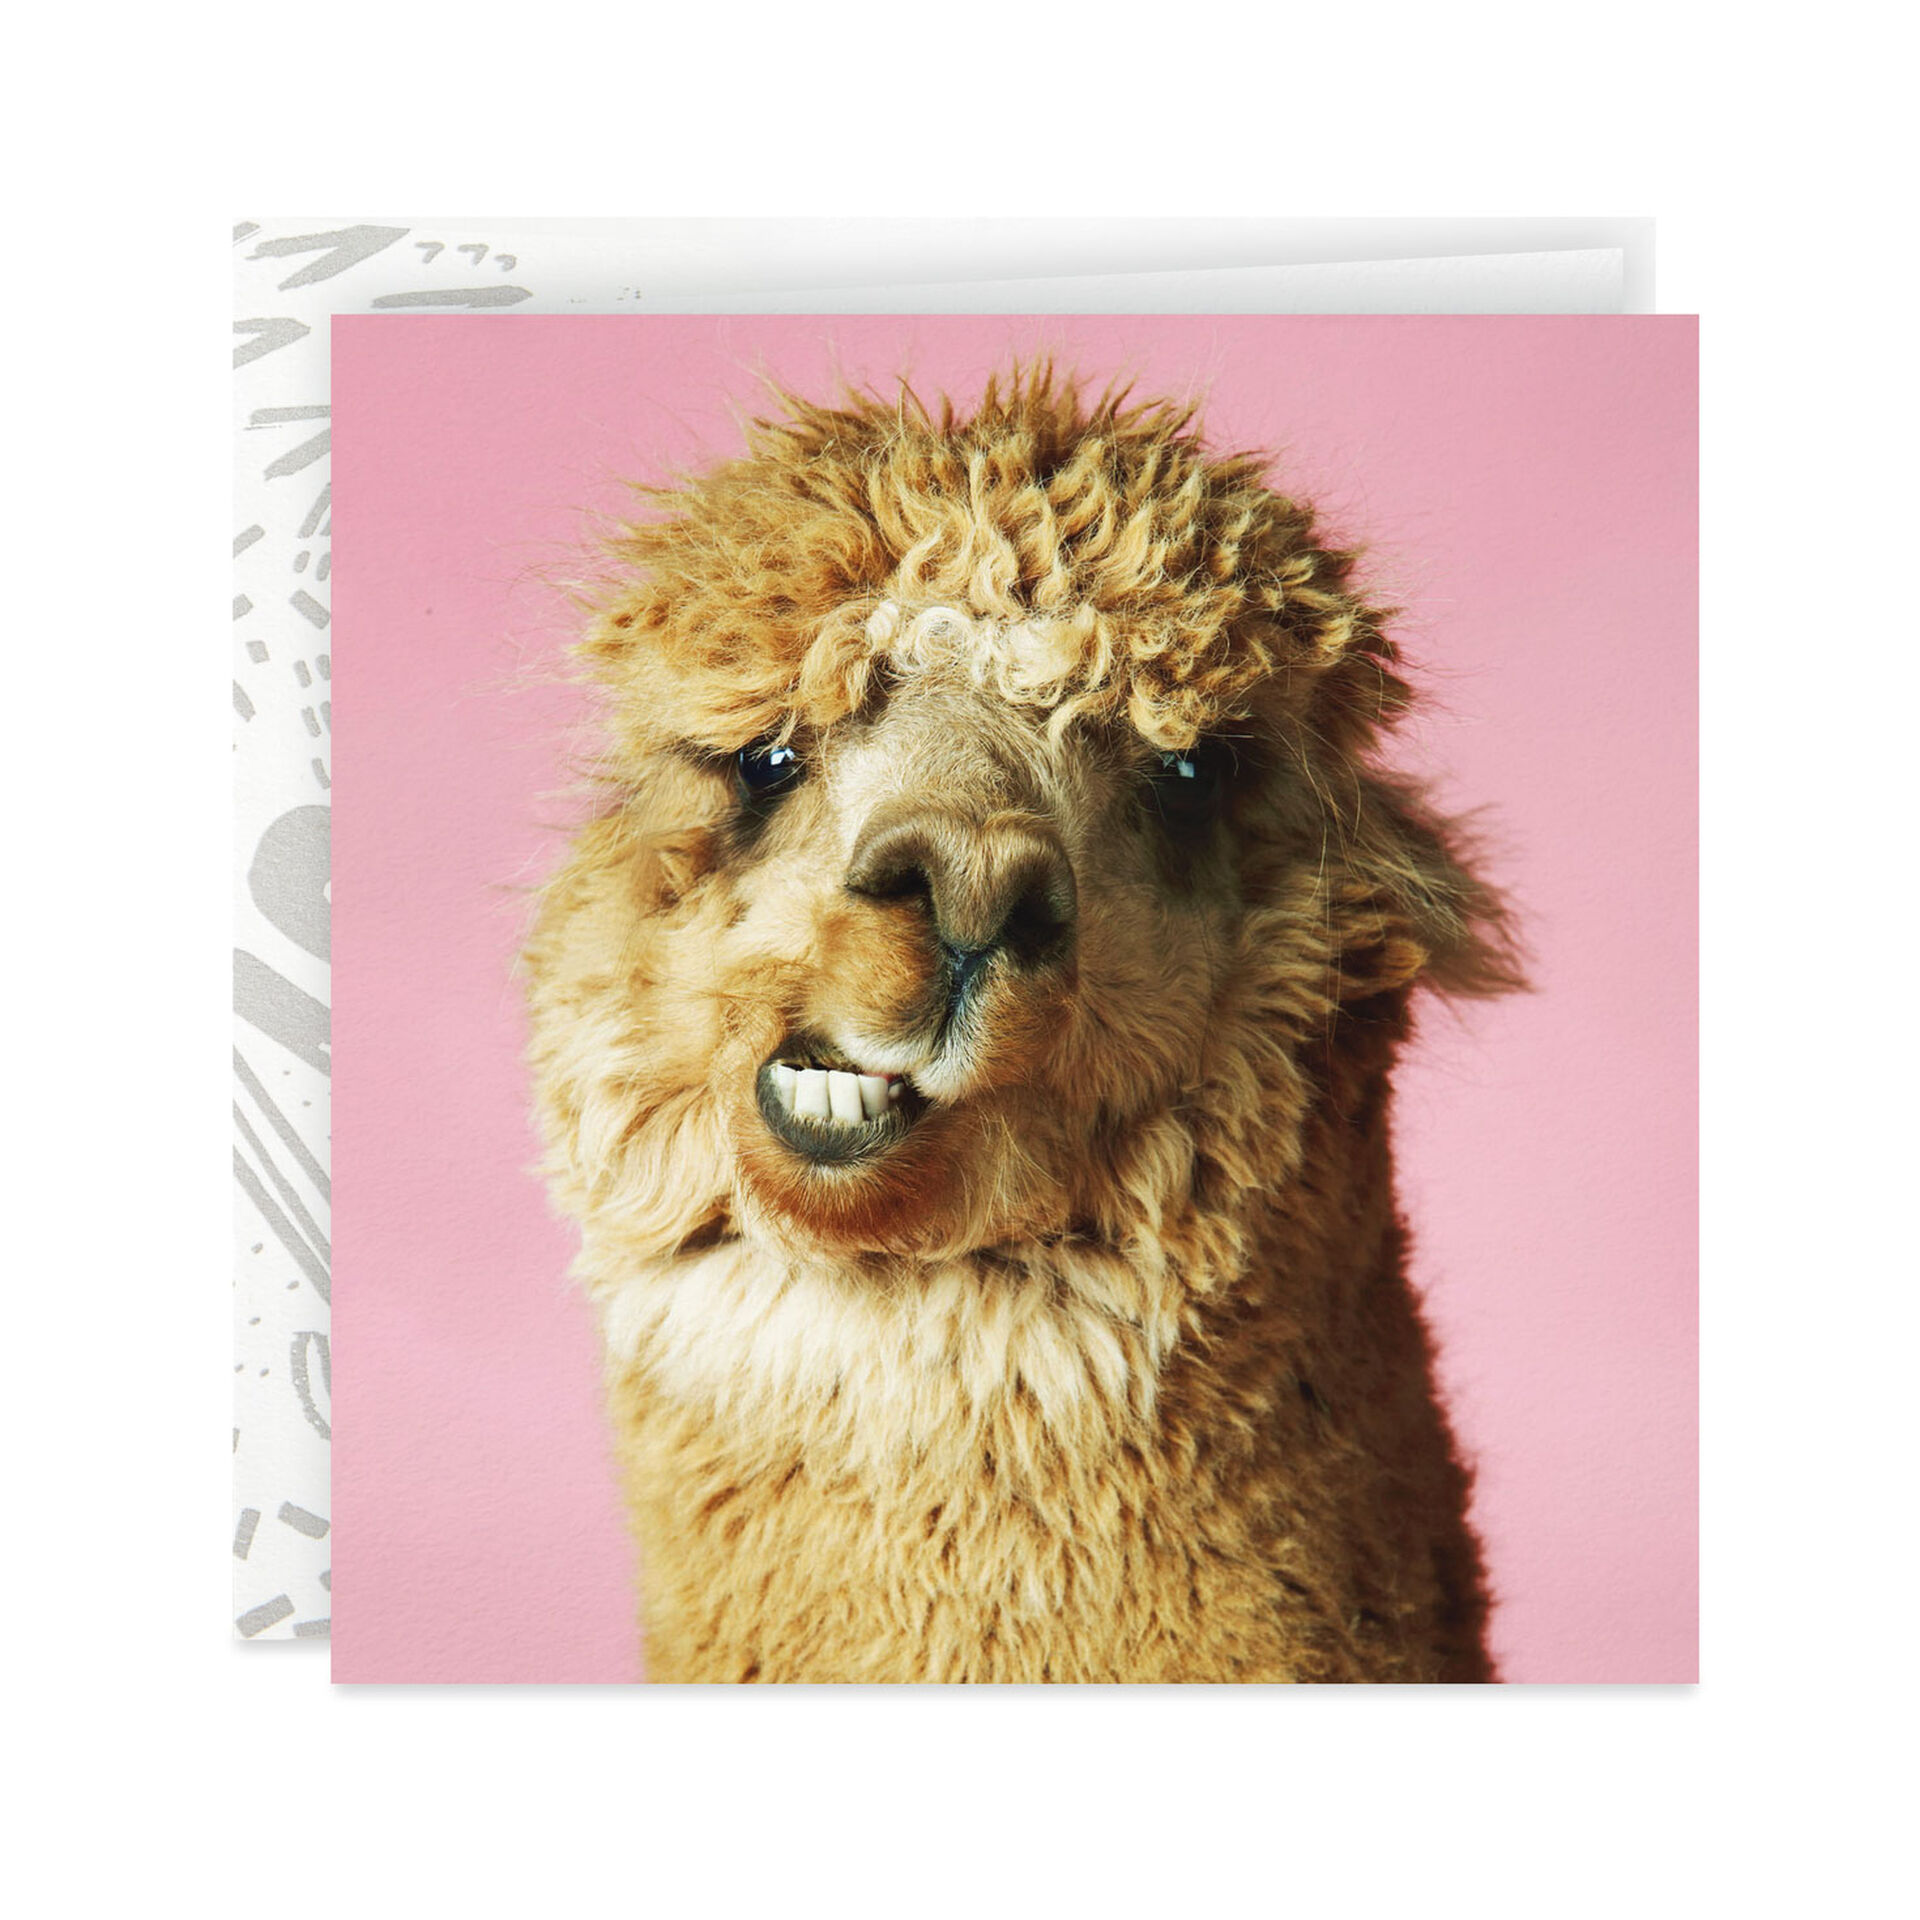 Llama-Making-a-Face-Birthday-Card_299YYB1330_01